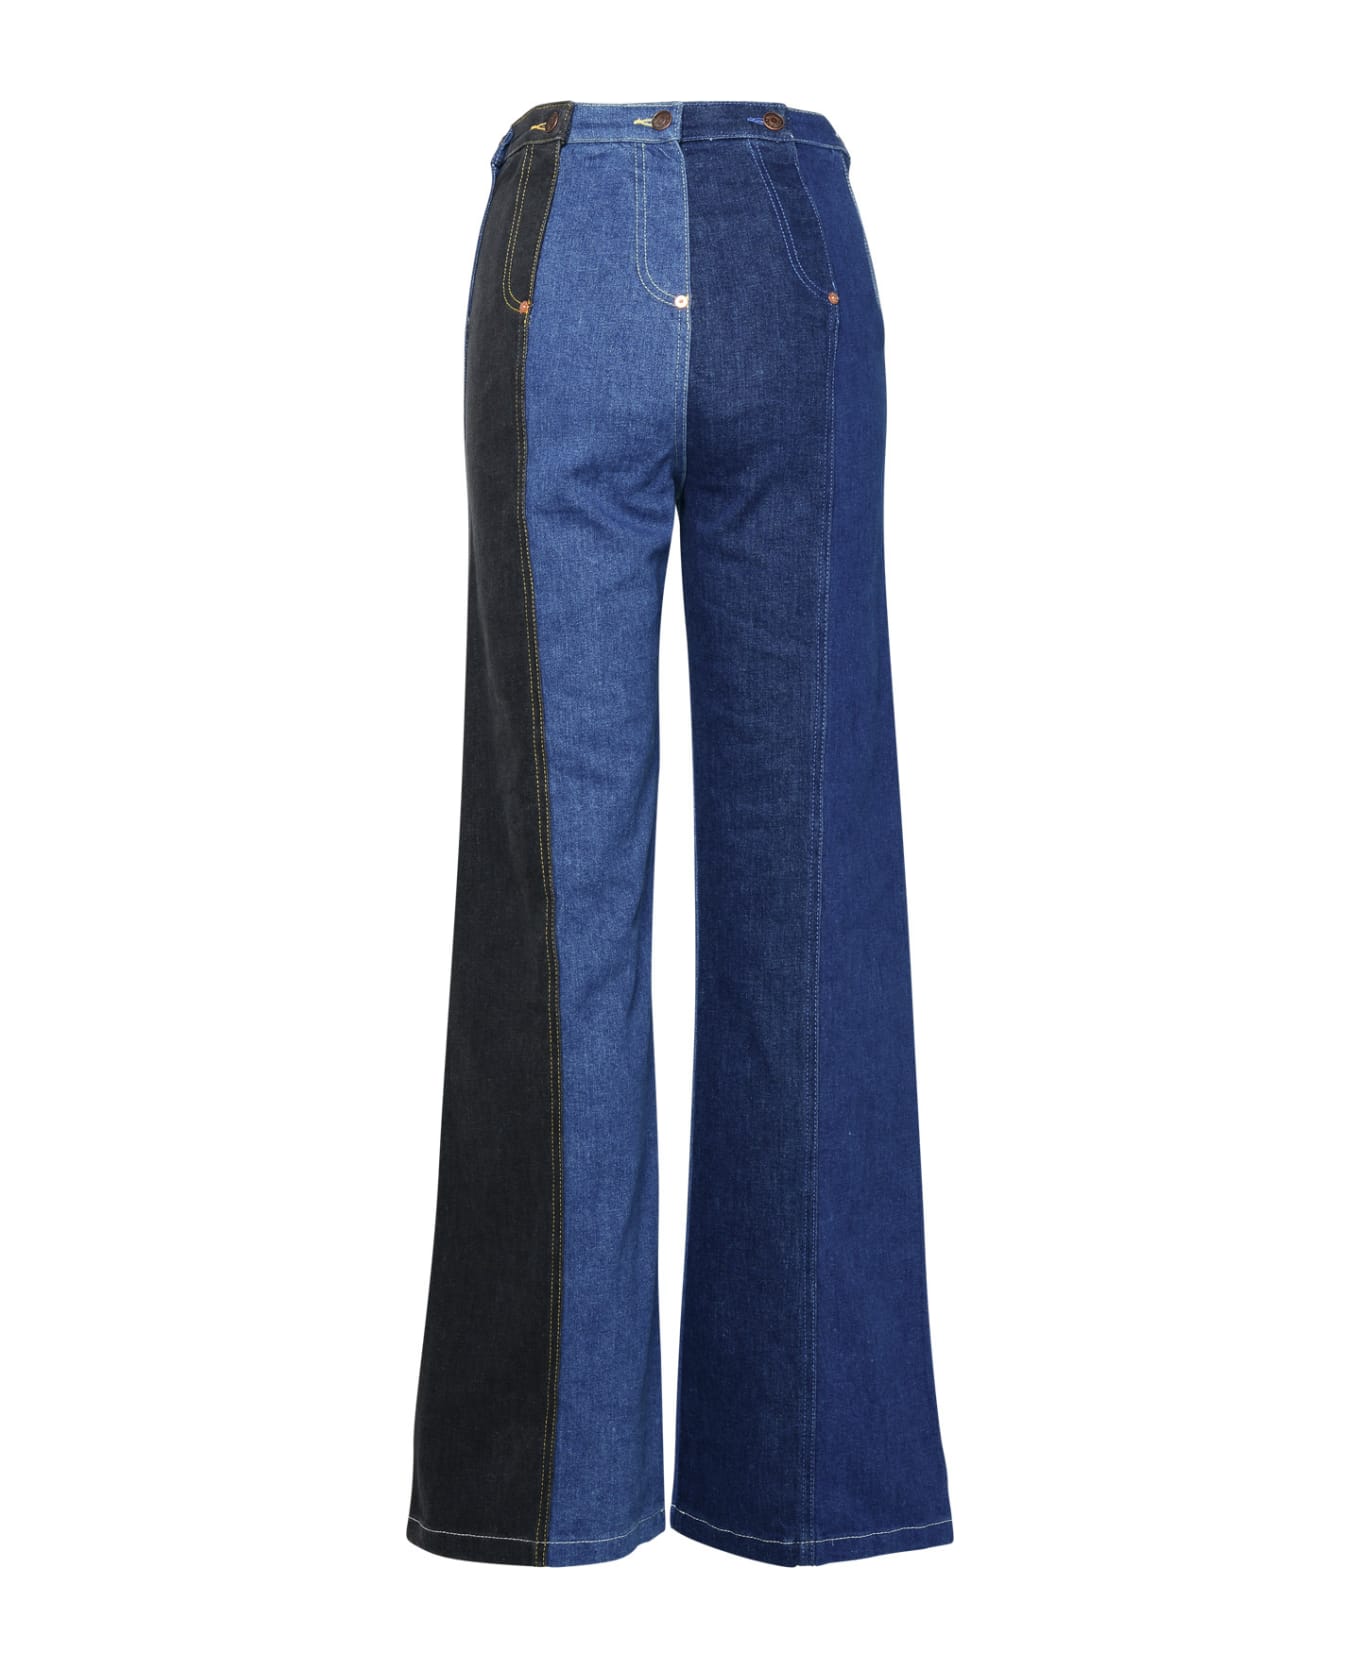 M05CH1N0 Jeans Blue Cotton Jeans - Denim